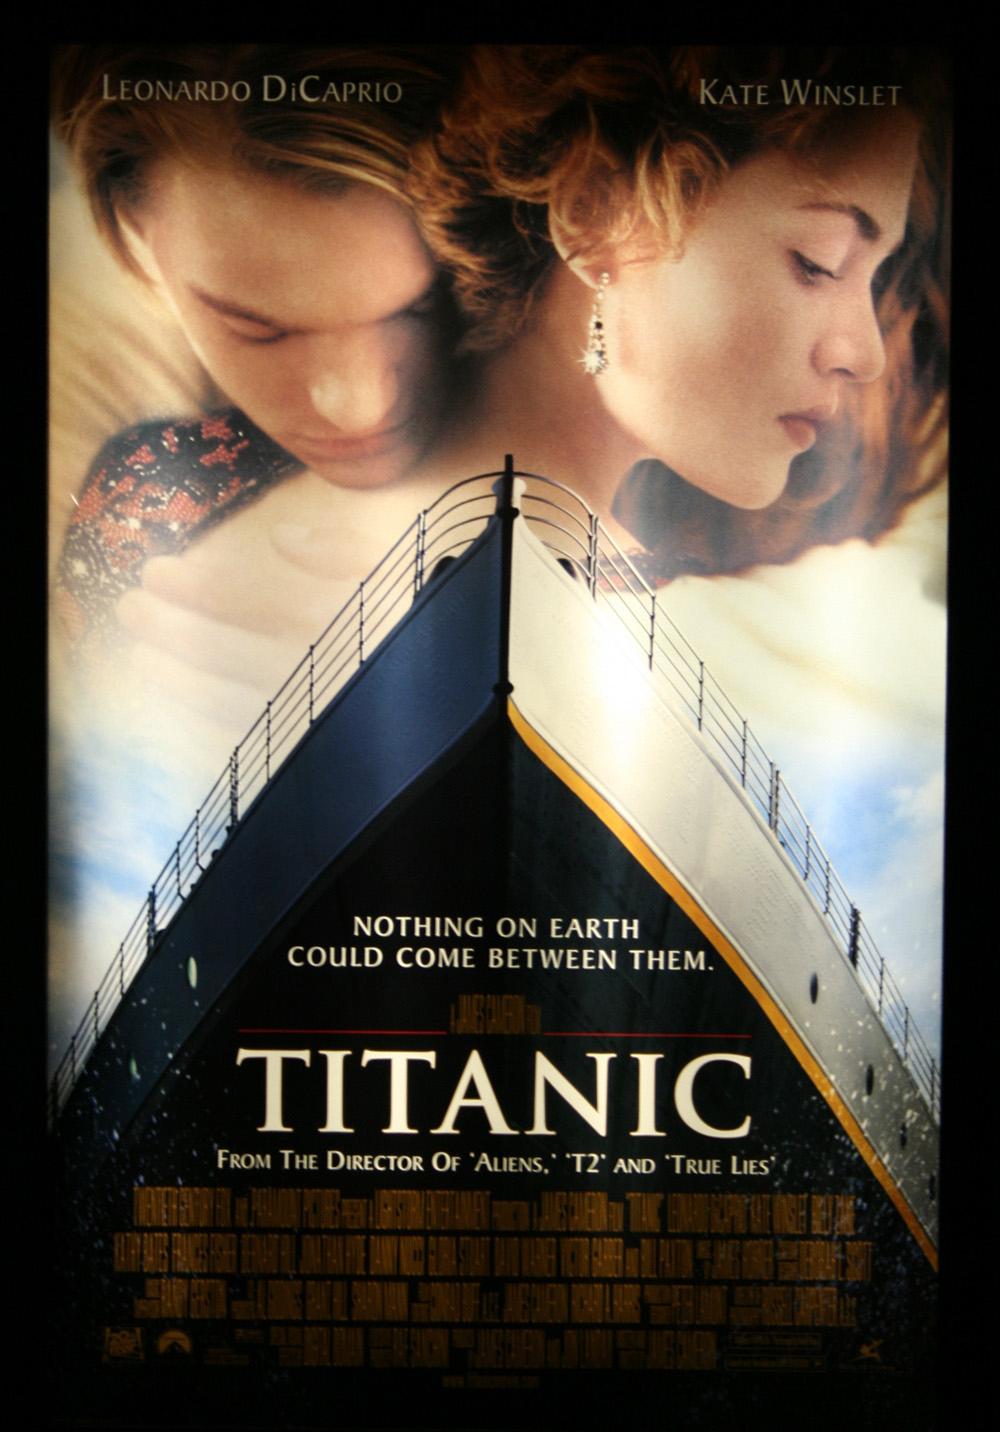 Titanic Film